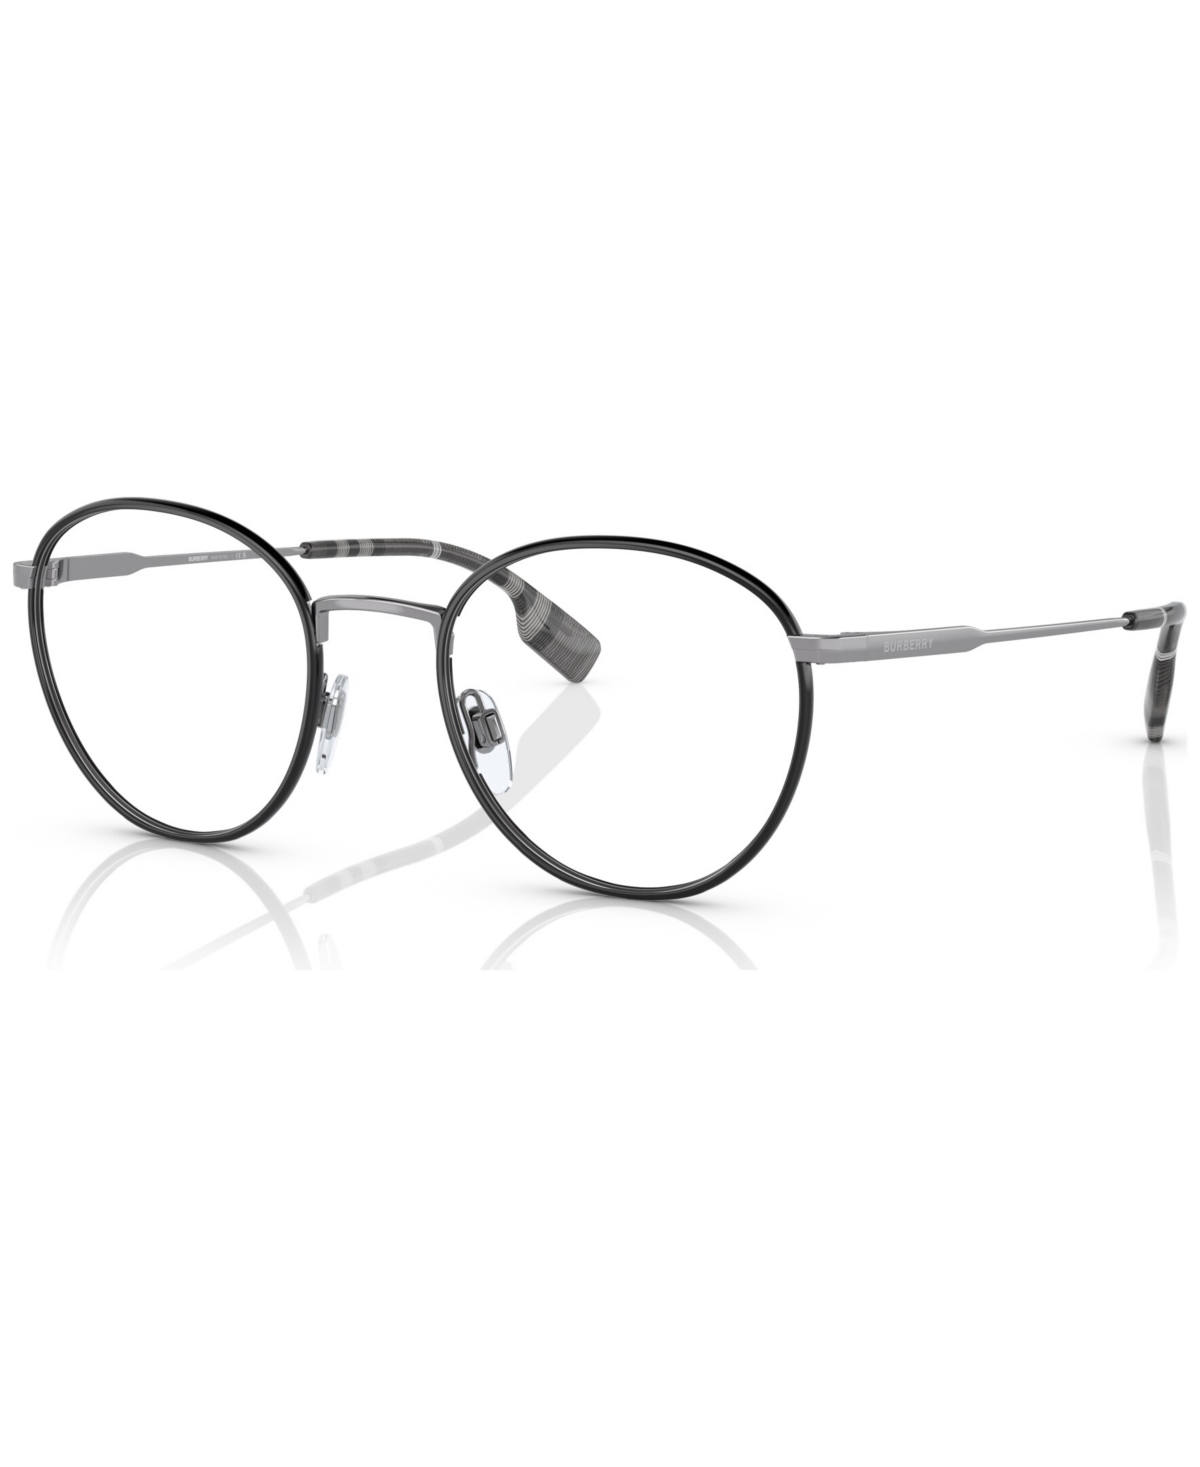 Men's Hugo Eyeglasses, BE1373 51 - Silver, Blue